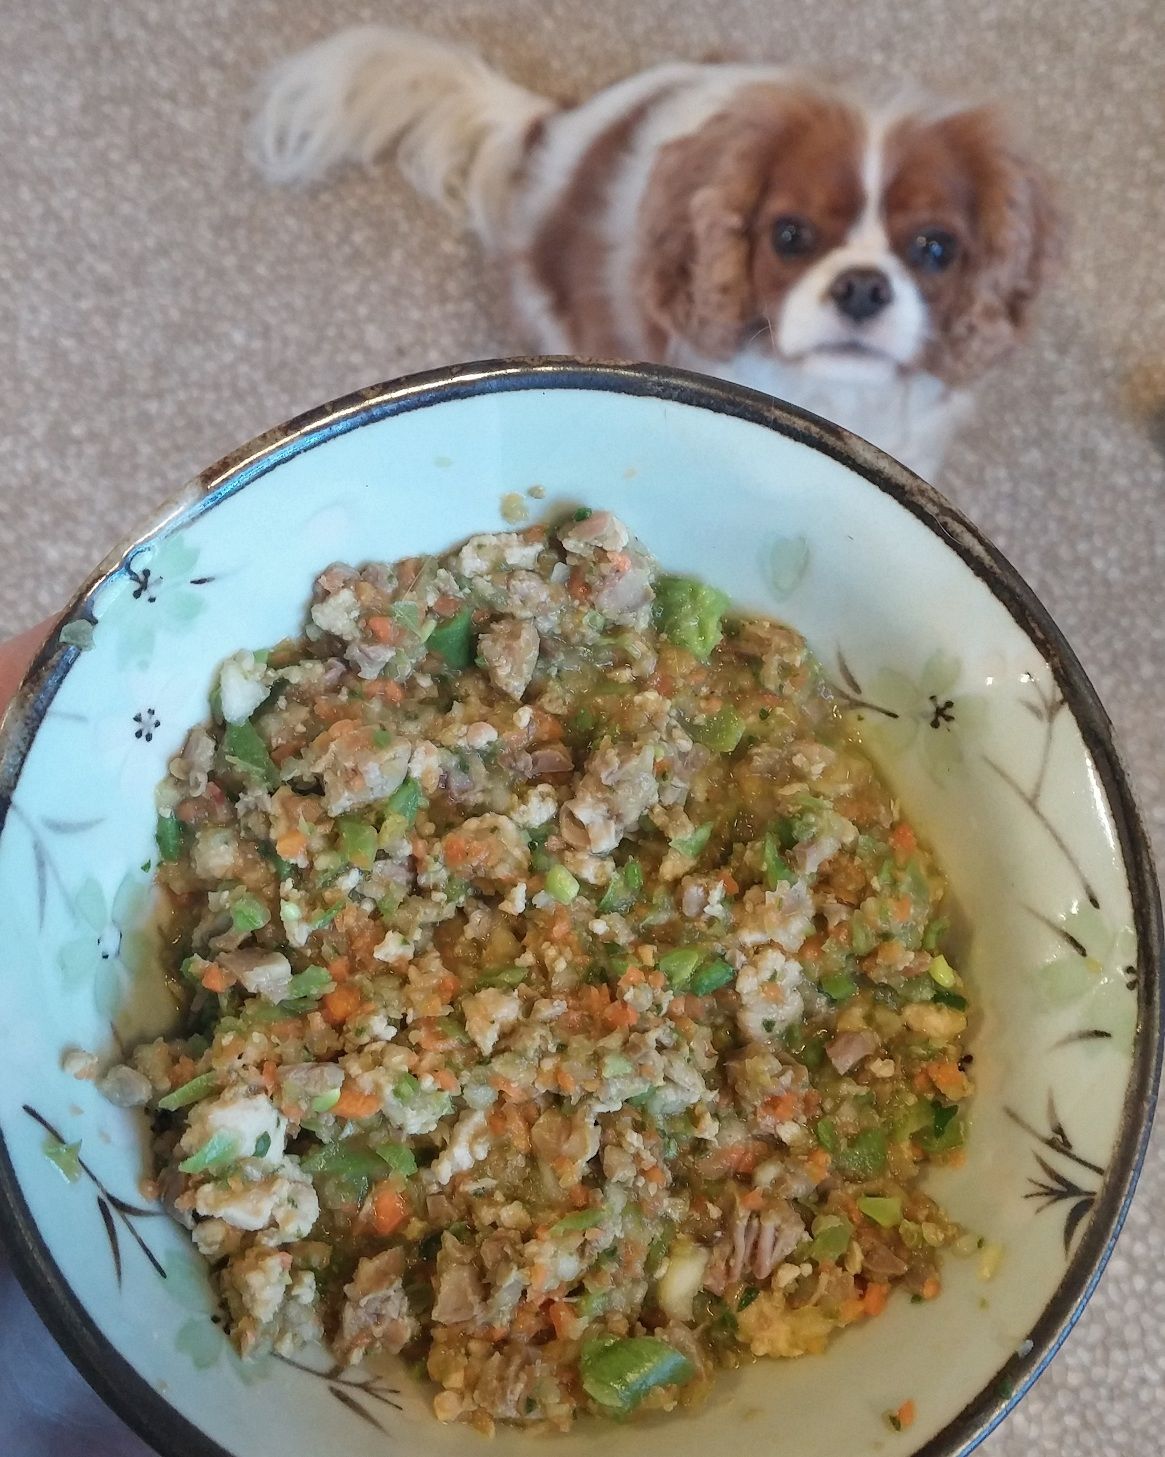 GrainFree Homemade Dog Food Recipe Allrecipes